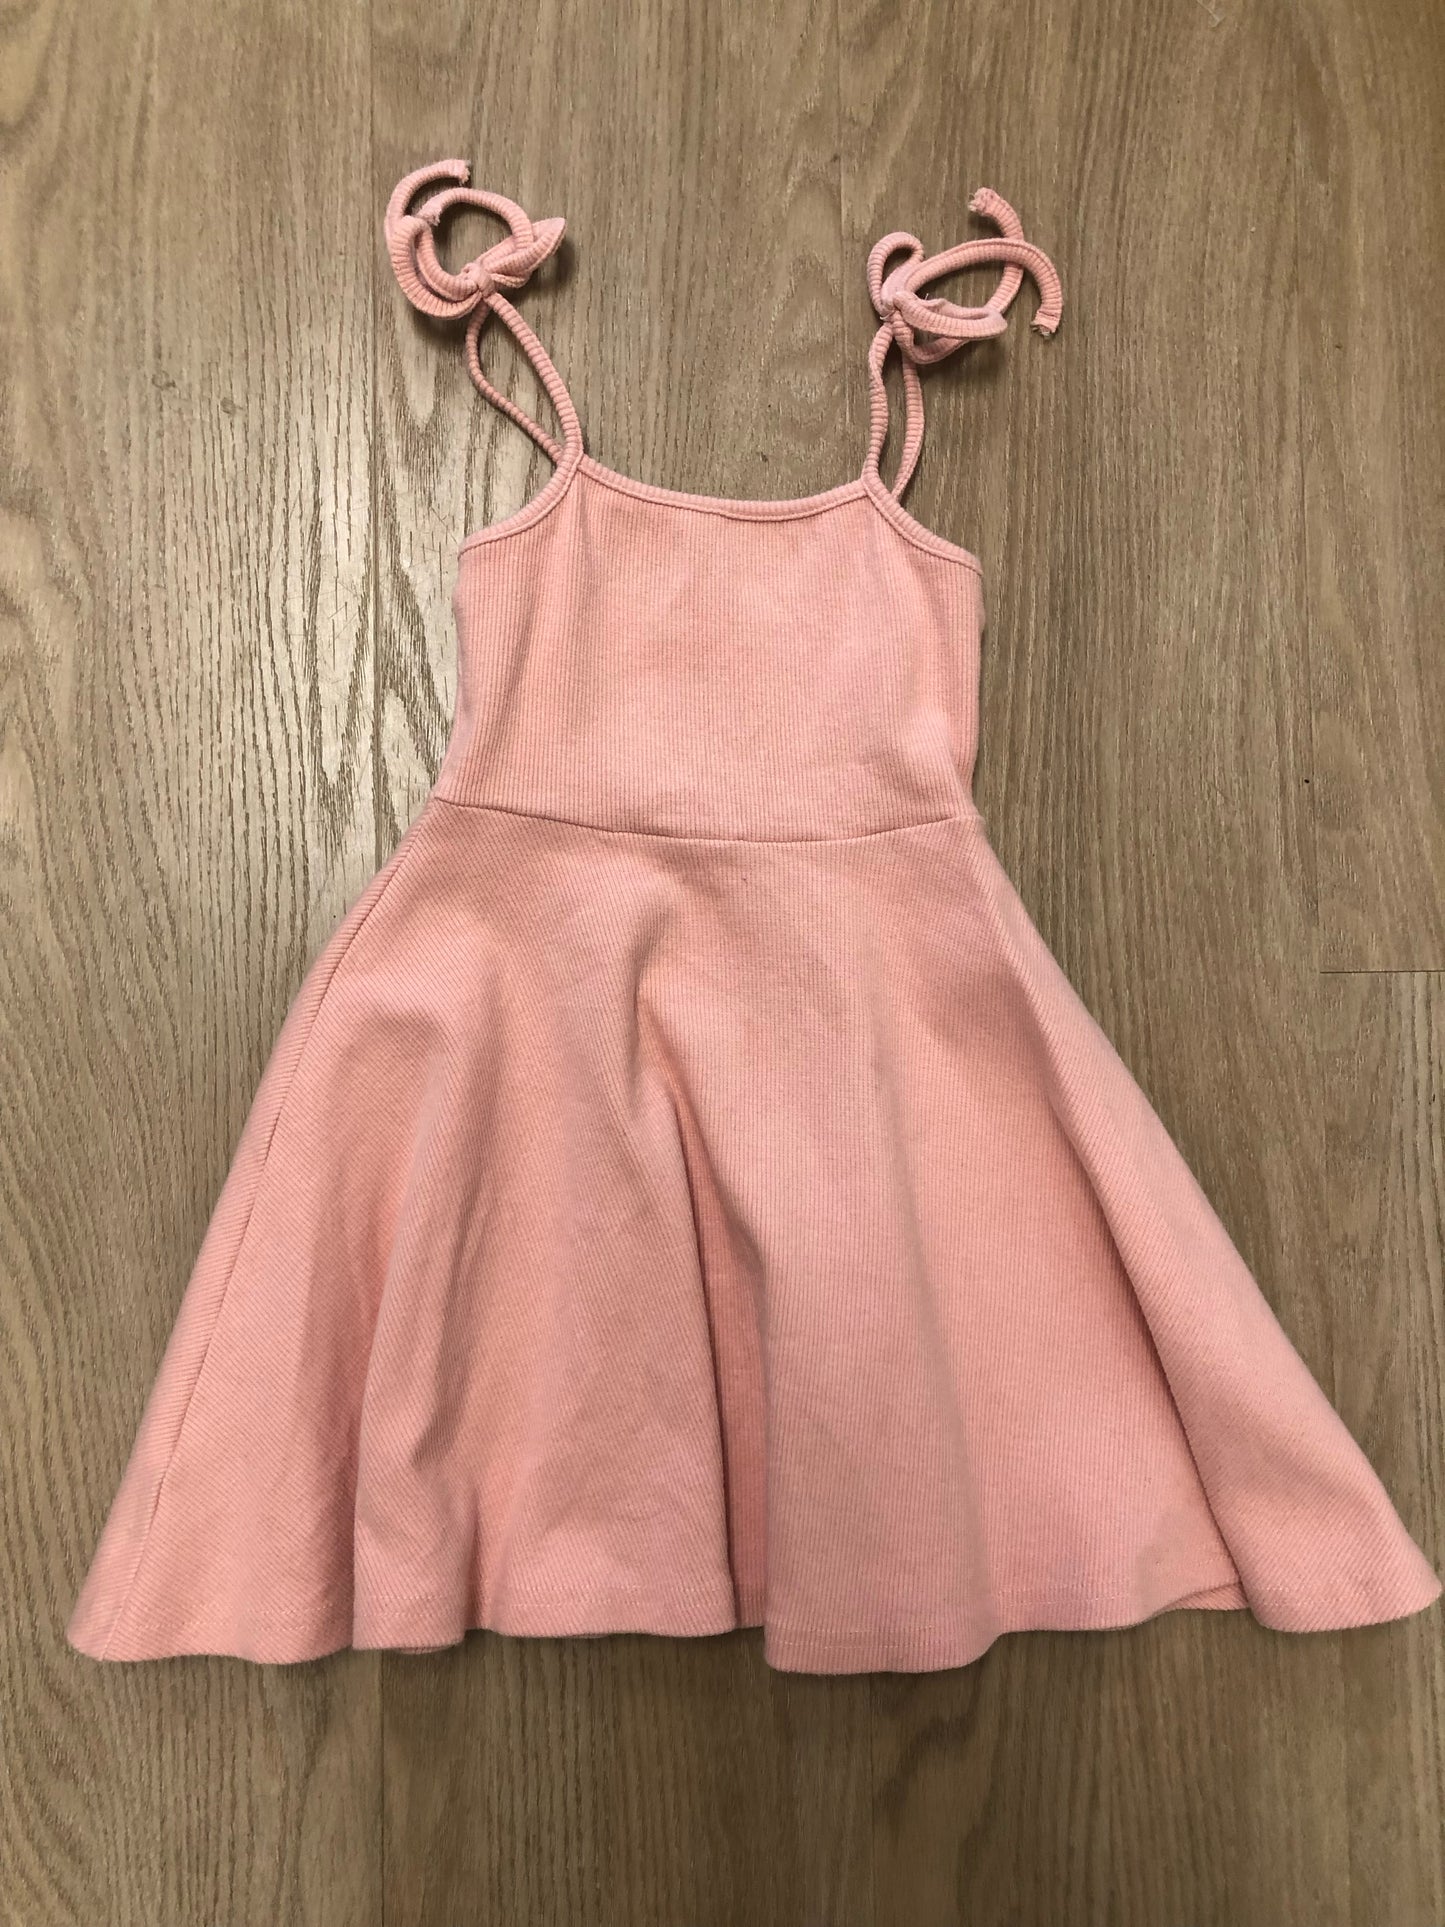 Vignette Child Size 2T Pink Ribbed Dress